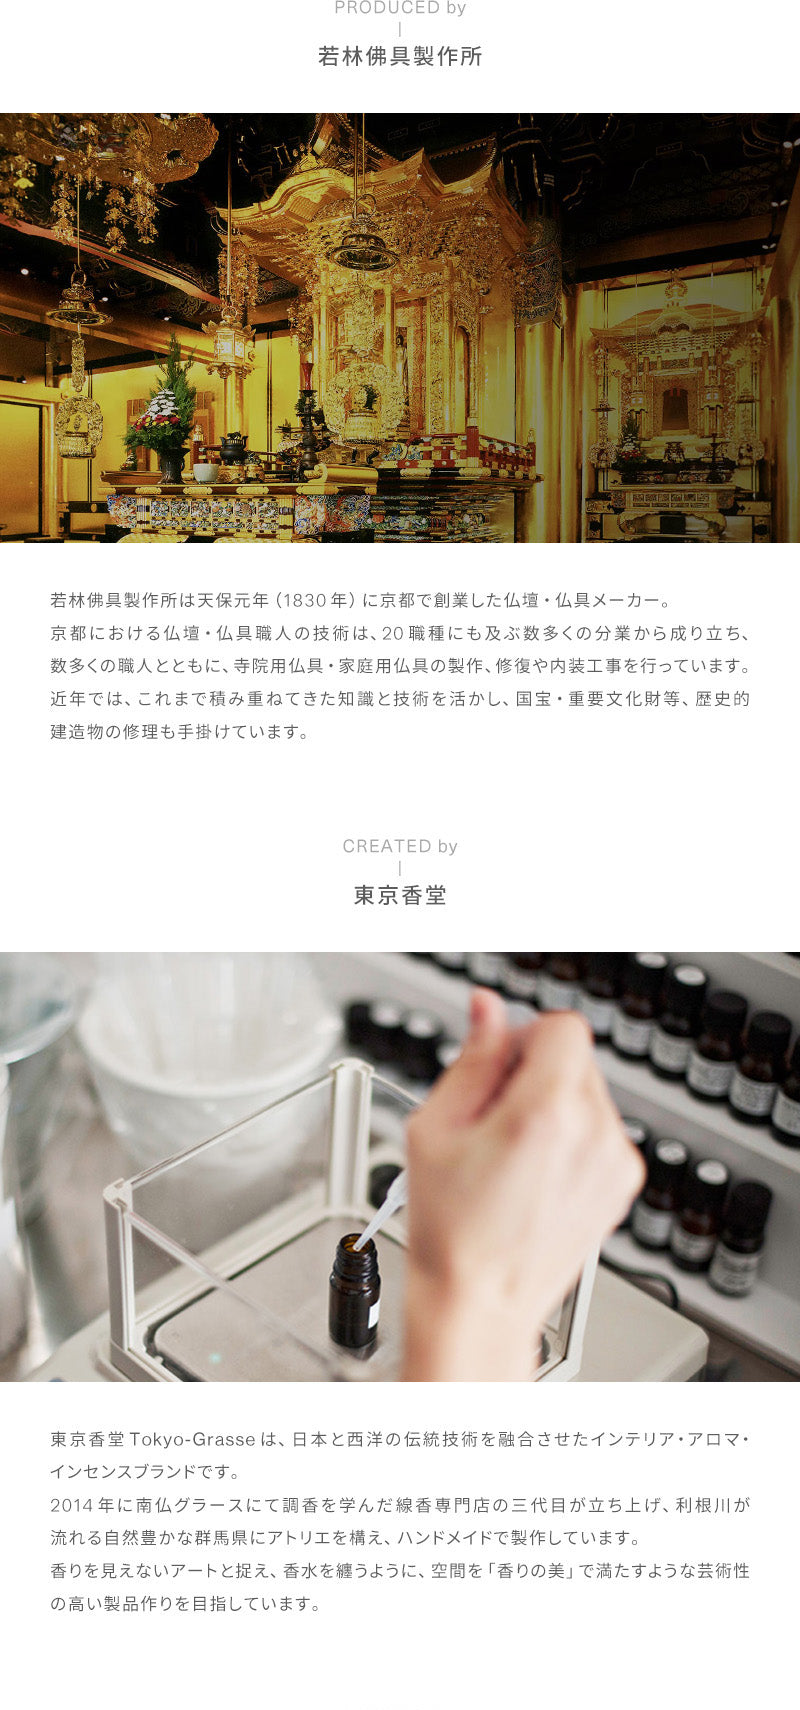 線香 「hito/toki ひととき 30本入 ギフトボックス」 香立付 3種の香りセット 説明画像